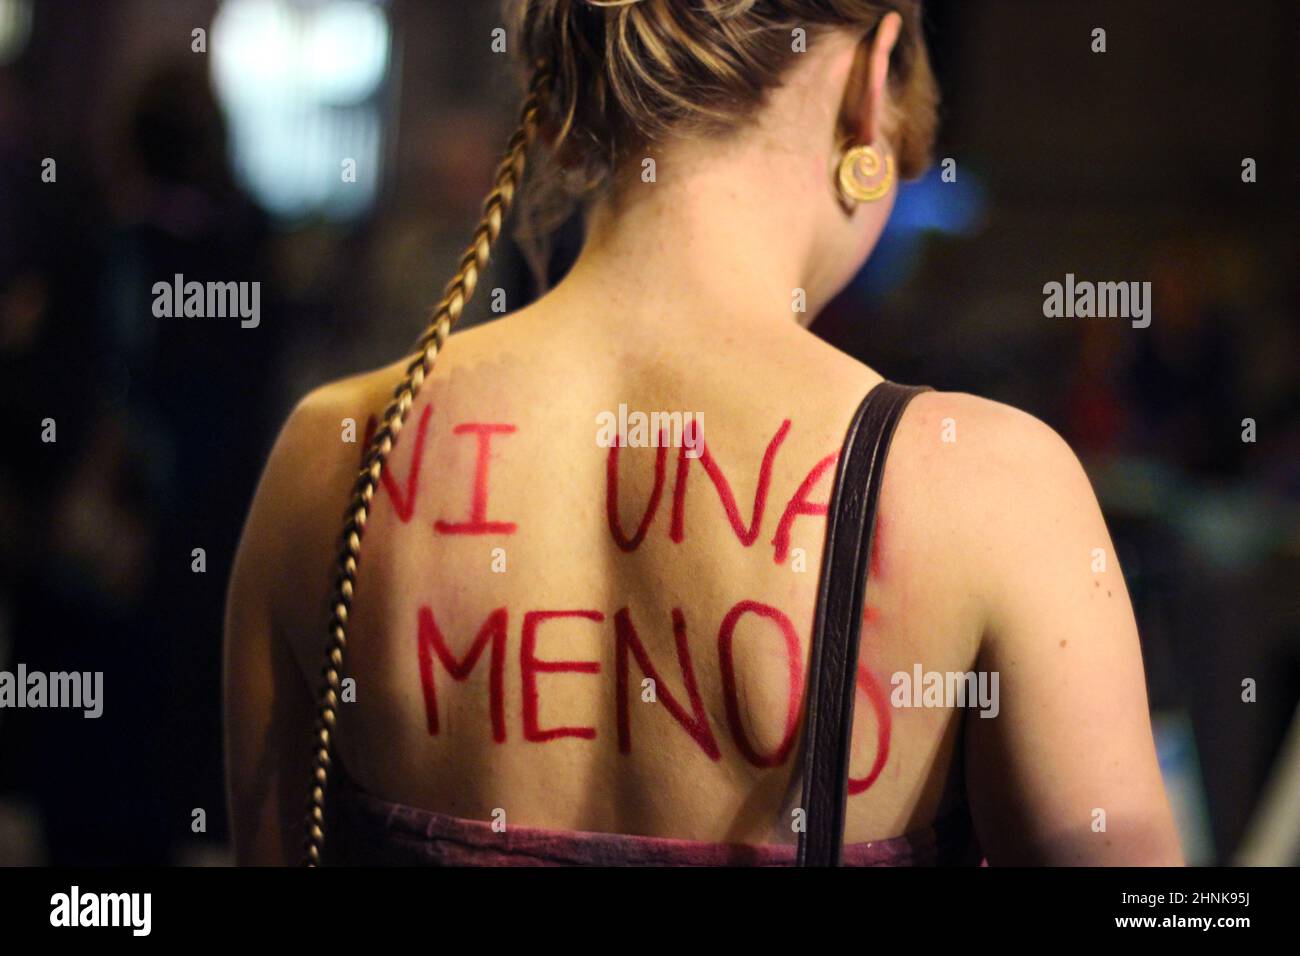 Para el fin de la violencia masculina contra las mujeres. Fotografía tomada en una manifestación el 8 de marzo (Madrid, España). Foto de stock